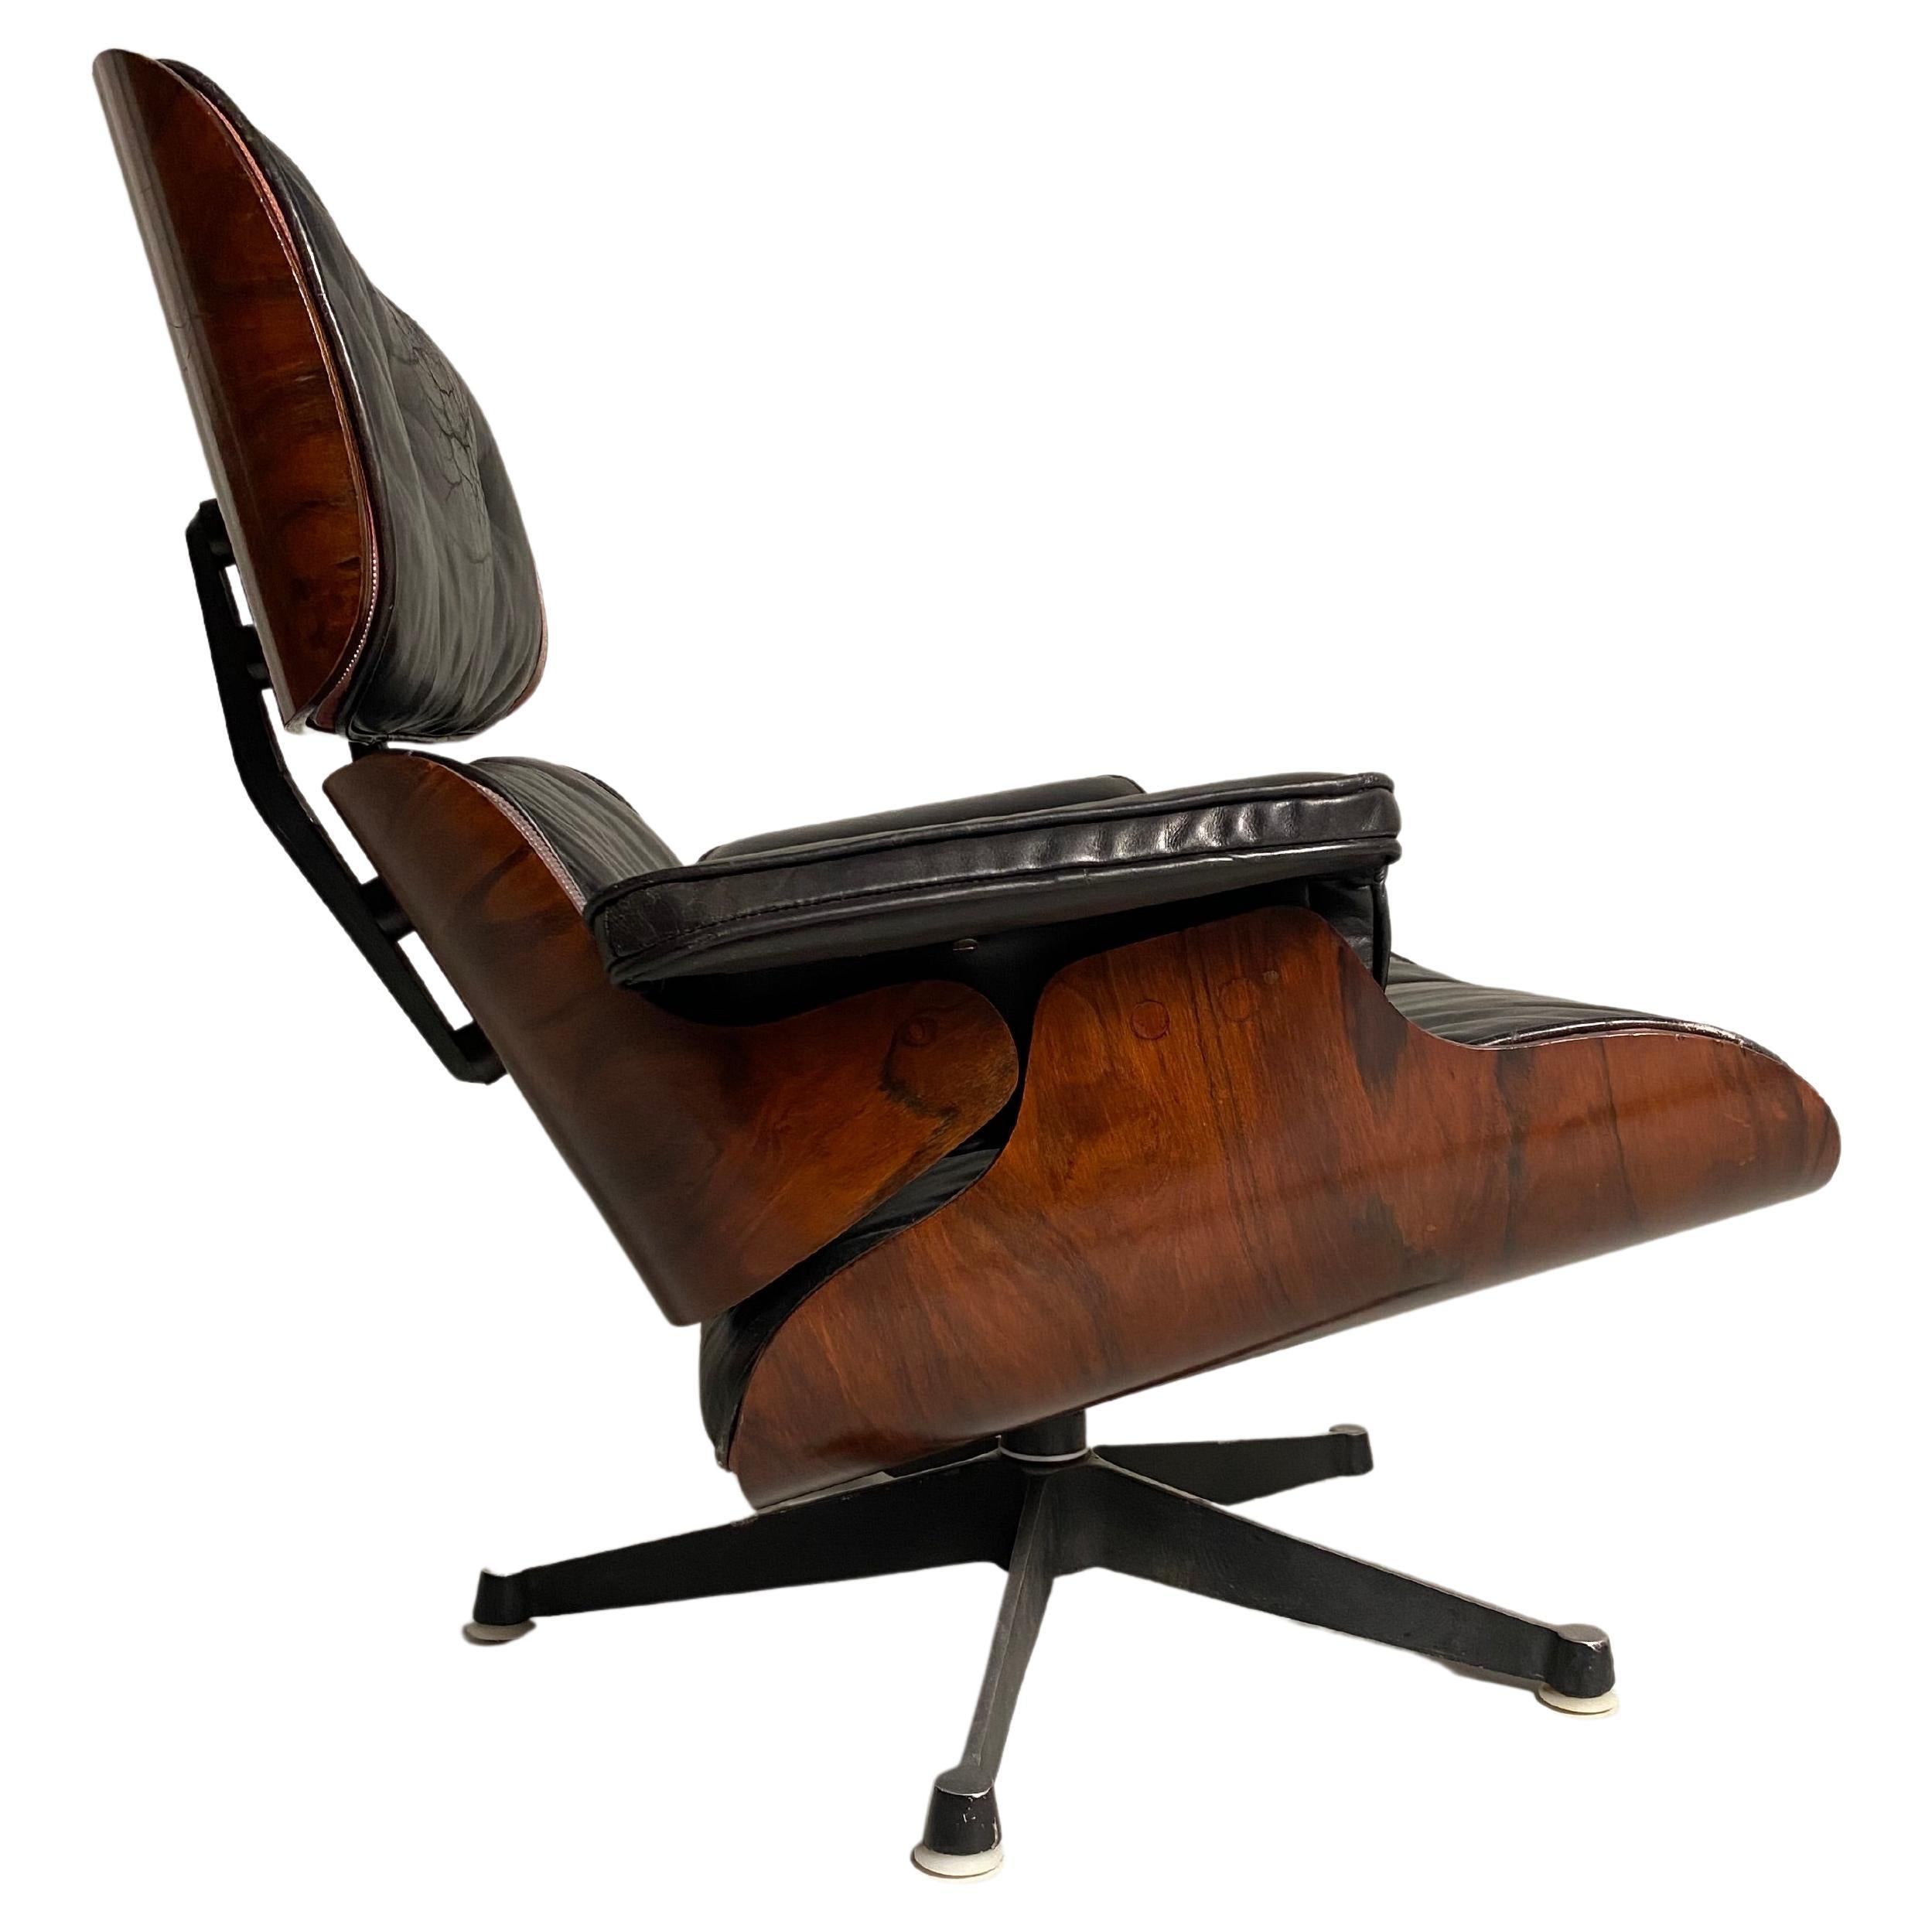 Le salon Eames est probablement l'un des fauteuils les plus célèbres au monde. Le couple de designers Charles et Ray Eames a conçu  en 1956 pour Herman Miller. C'est la première chaise que le couple a conçue pour un marché haut de gamme. Des